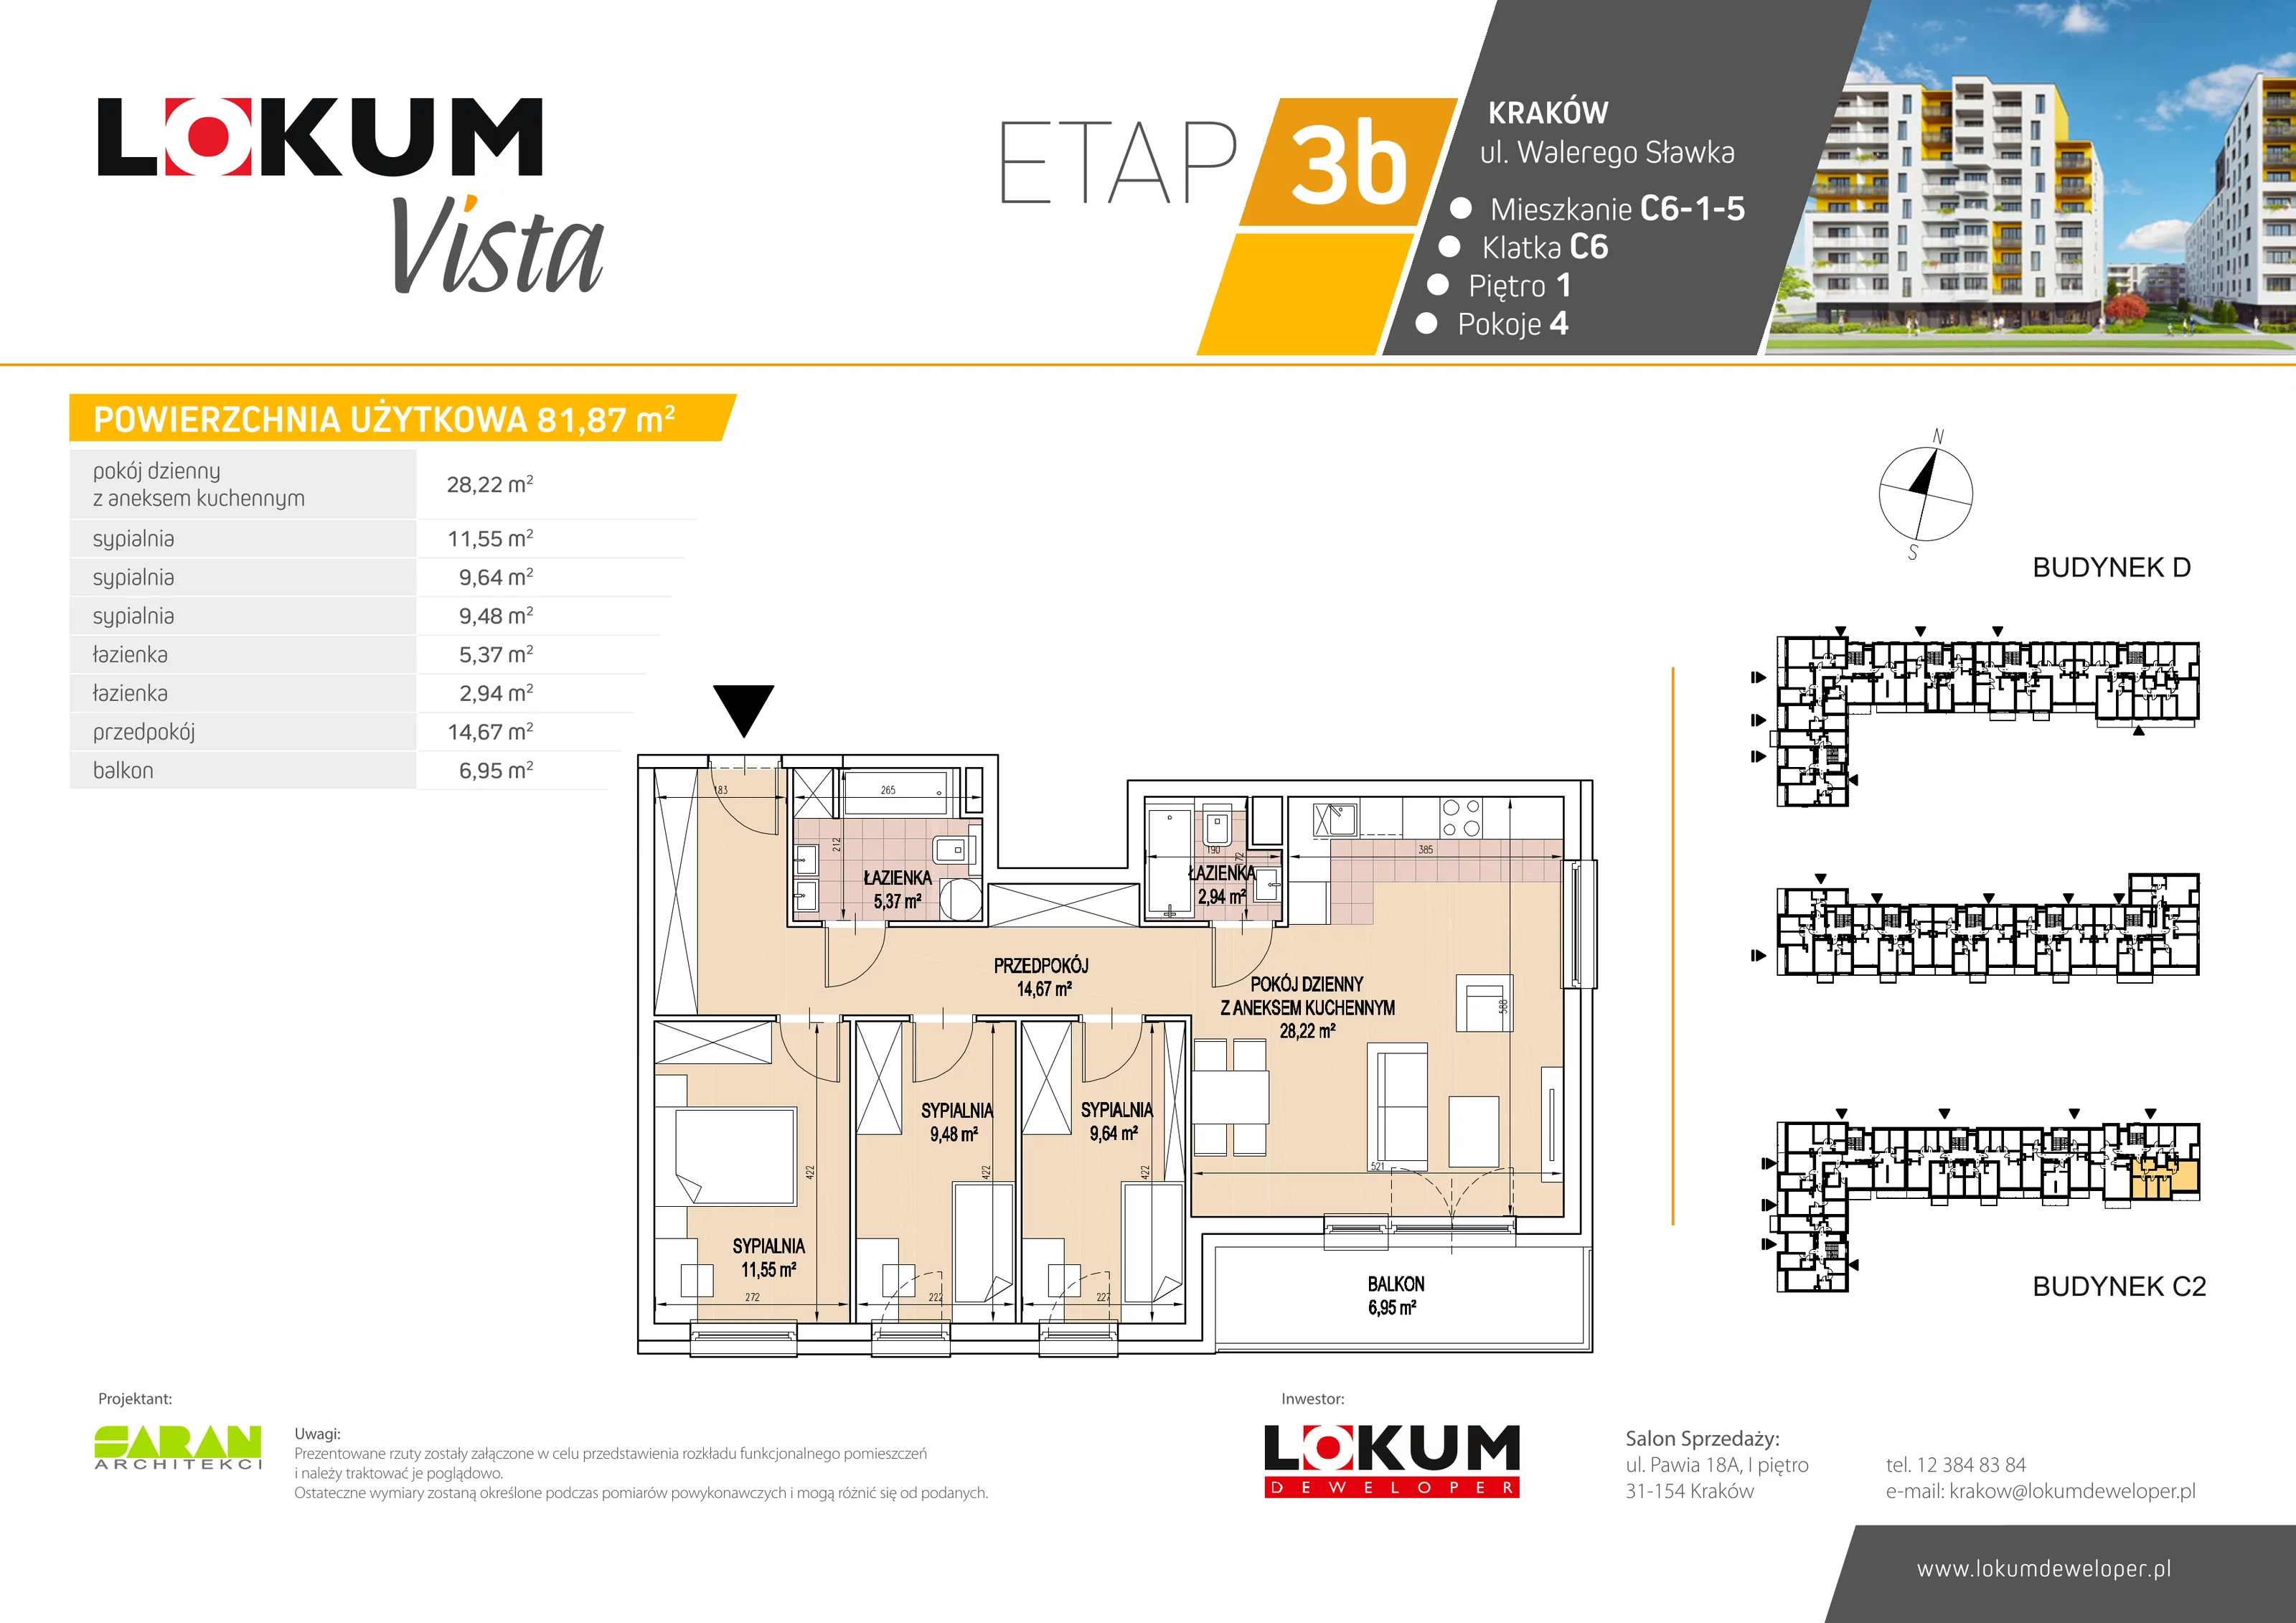 Mieszkanie 82,12 m², piętro 1, oferta nr C6-1-5, Lokum Vista, Kraków, Podgórze Duchackie, Wola Duchacka, ul. Walerego Sławka